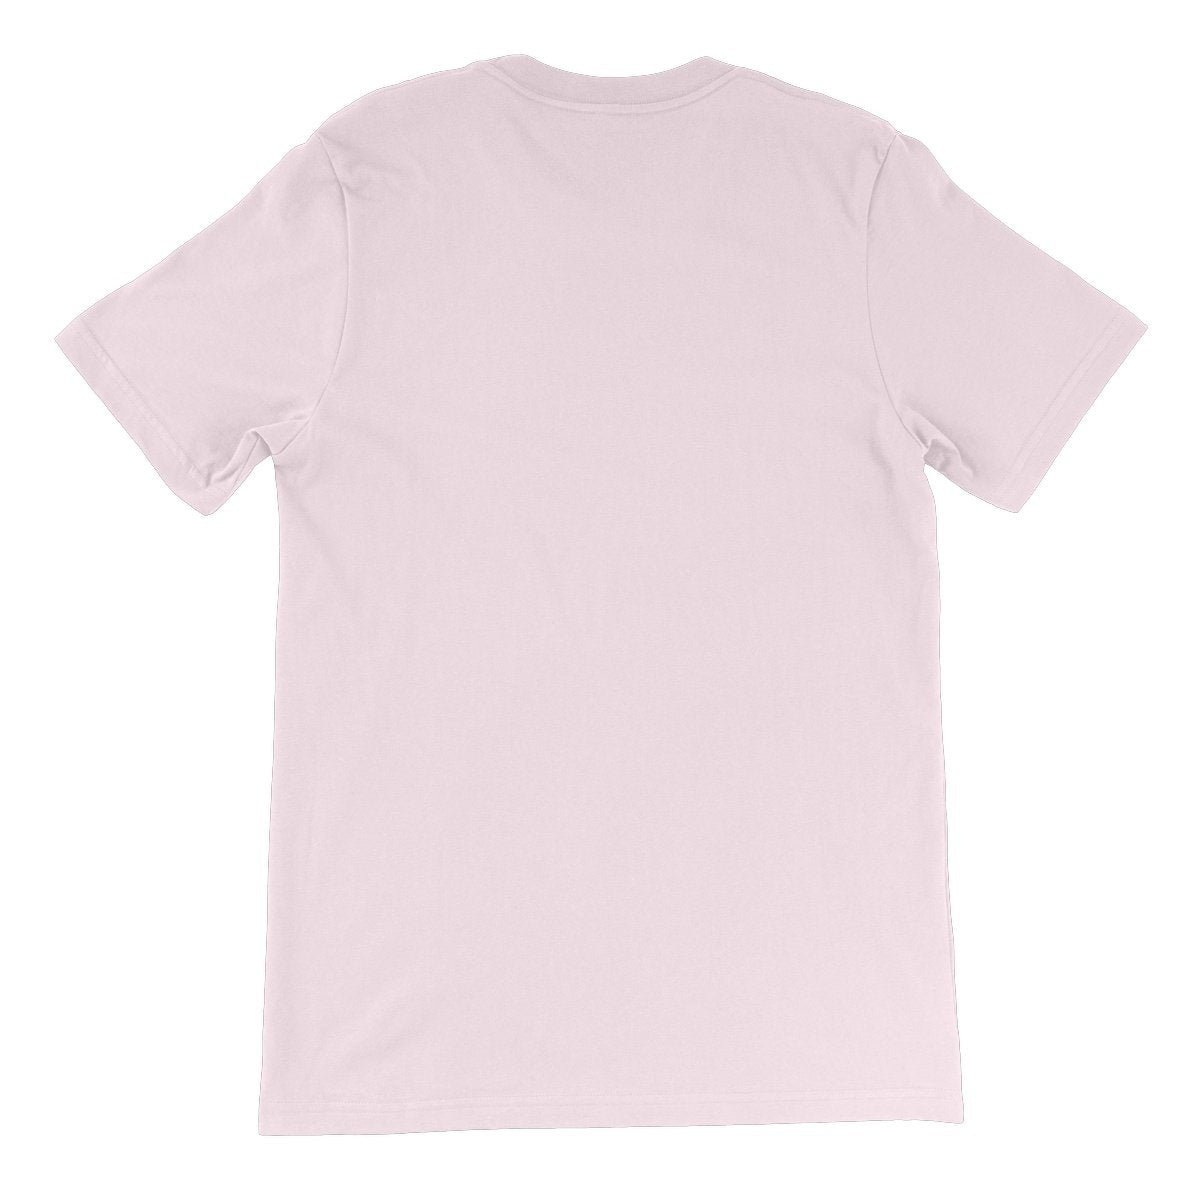 Unisex Premium T-Shirt - 'S'up?'